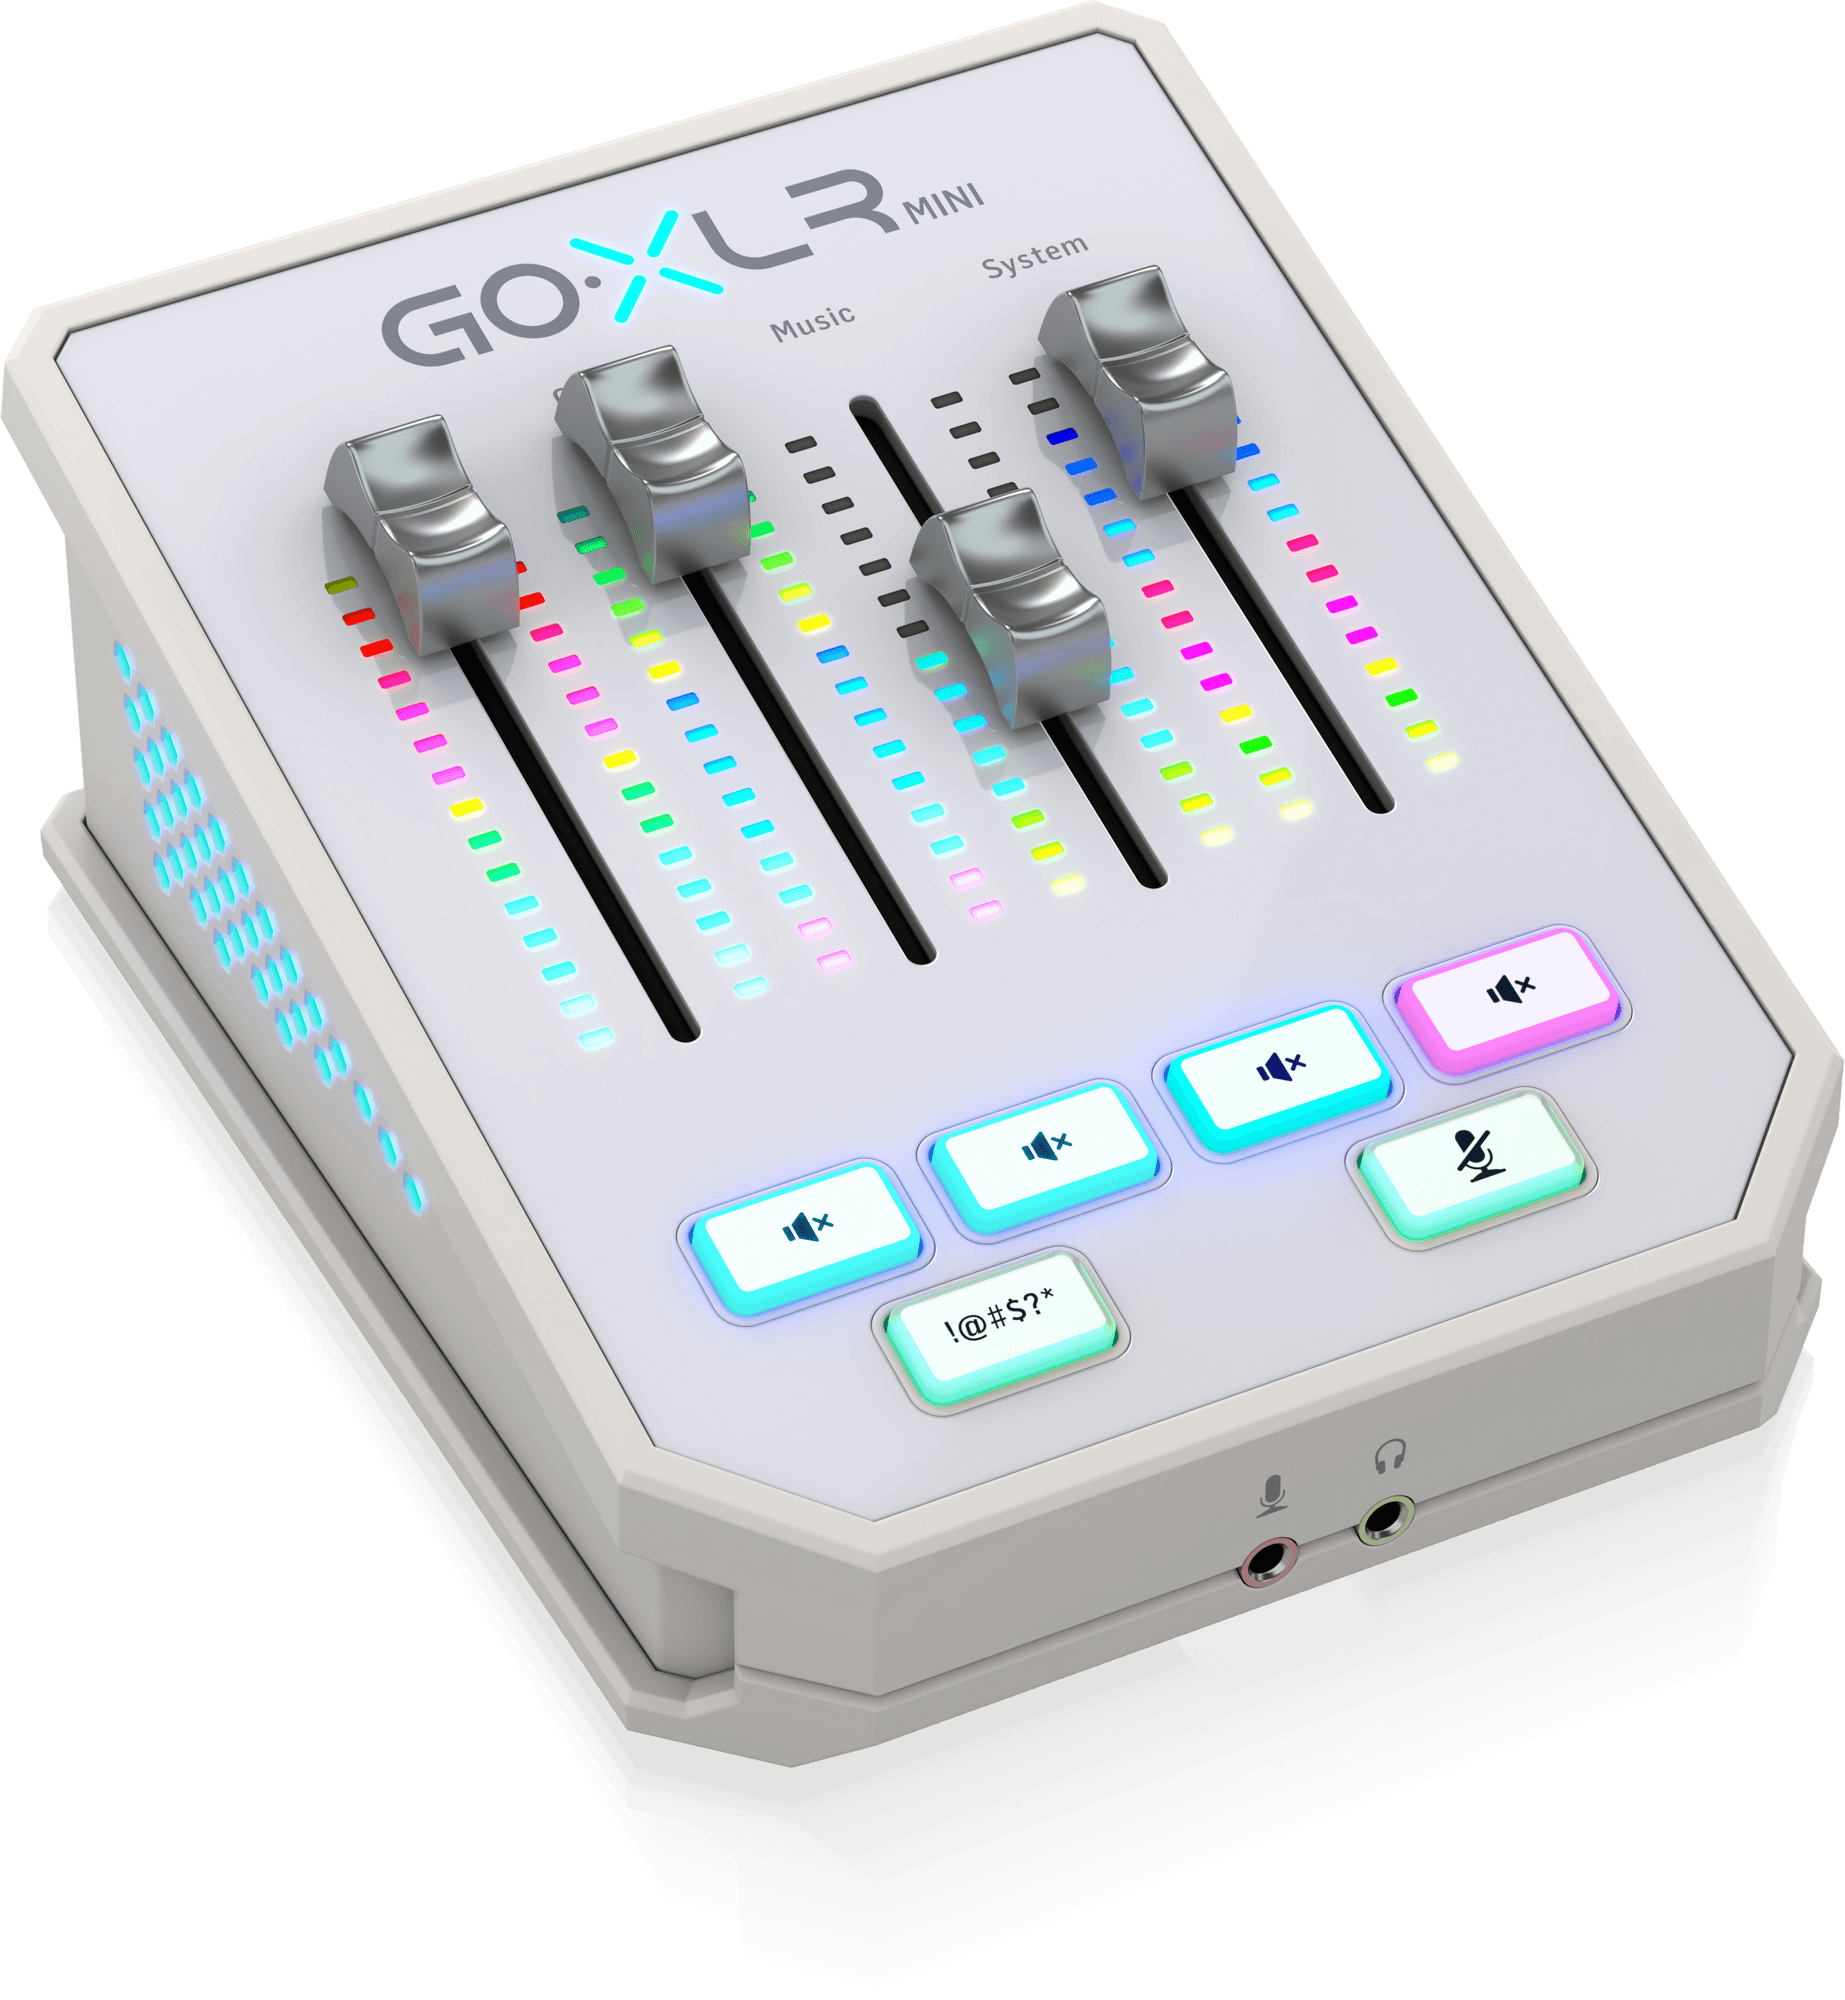 TC-Helicon GO XLR MINI USB 2.0 audio interface / mixer for